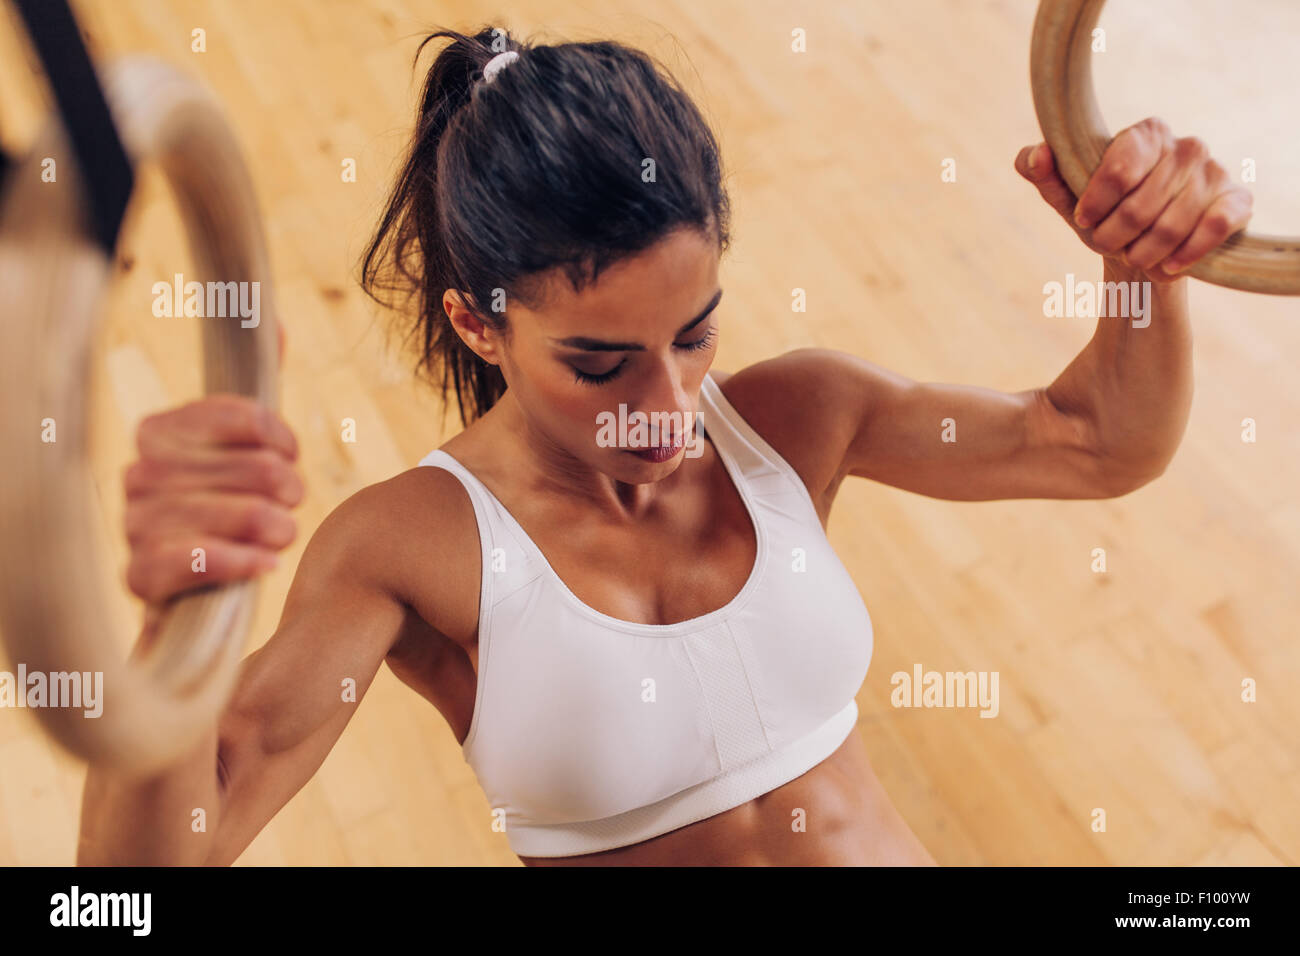 Imagen de fuerte joven haciendo pull-ups ejercicio usando anillos de gimnasia en el gimnasio. Foto de stock